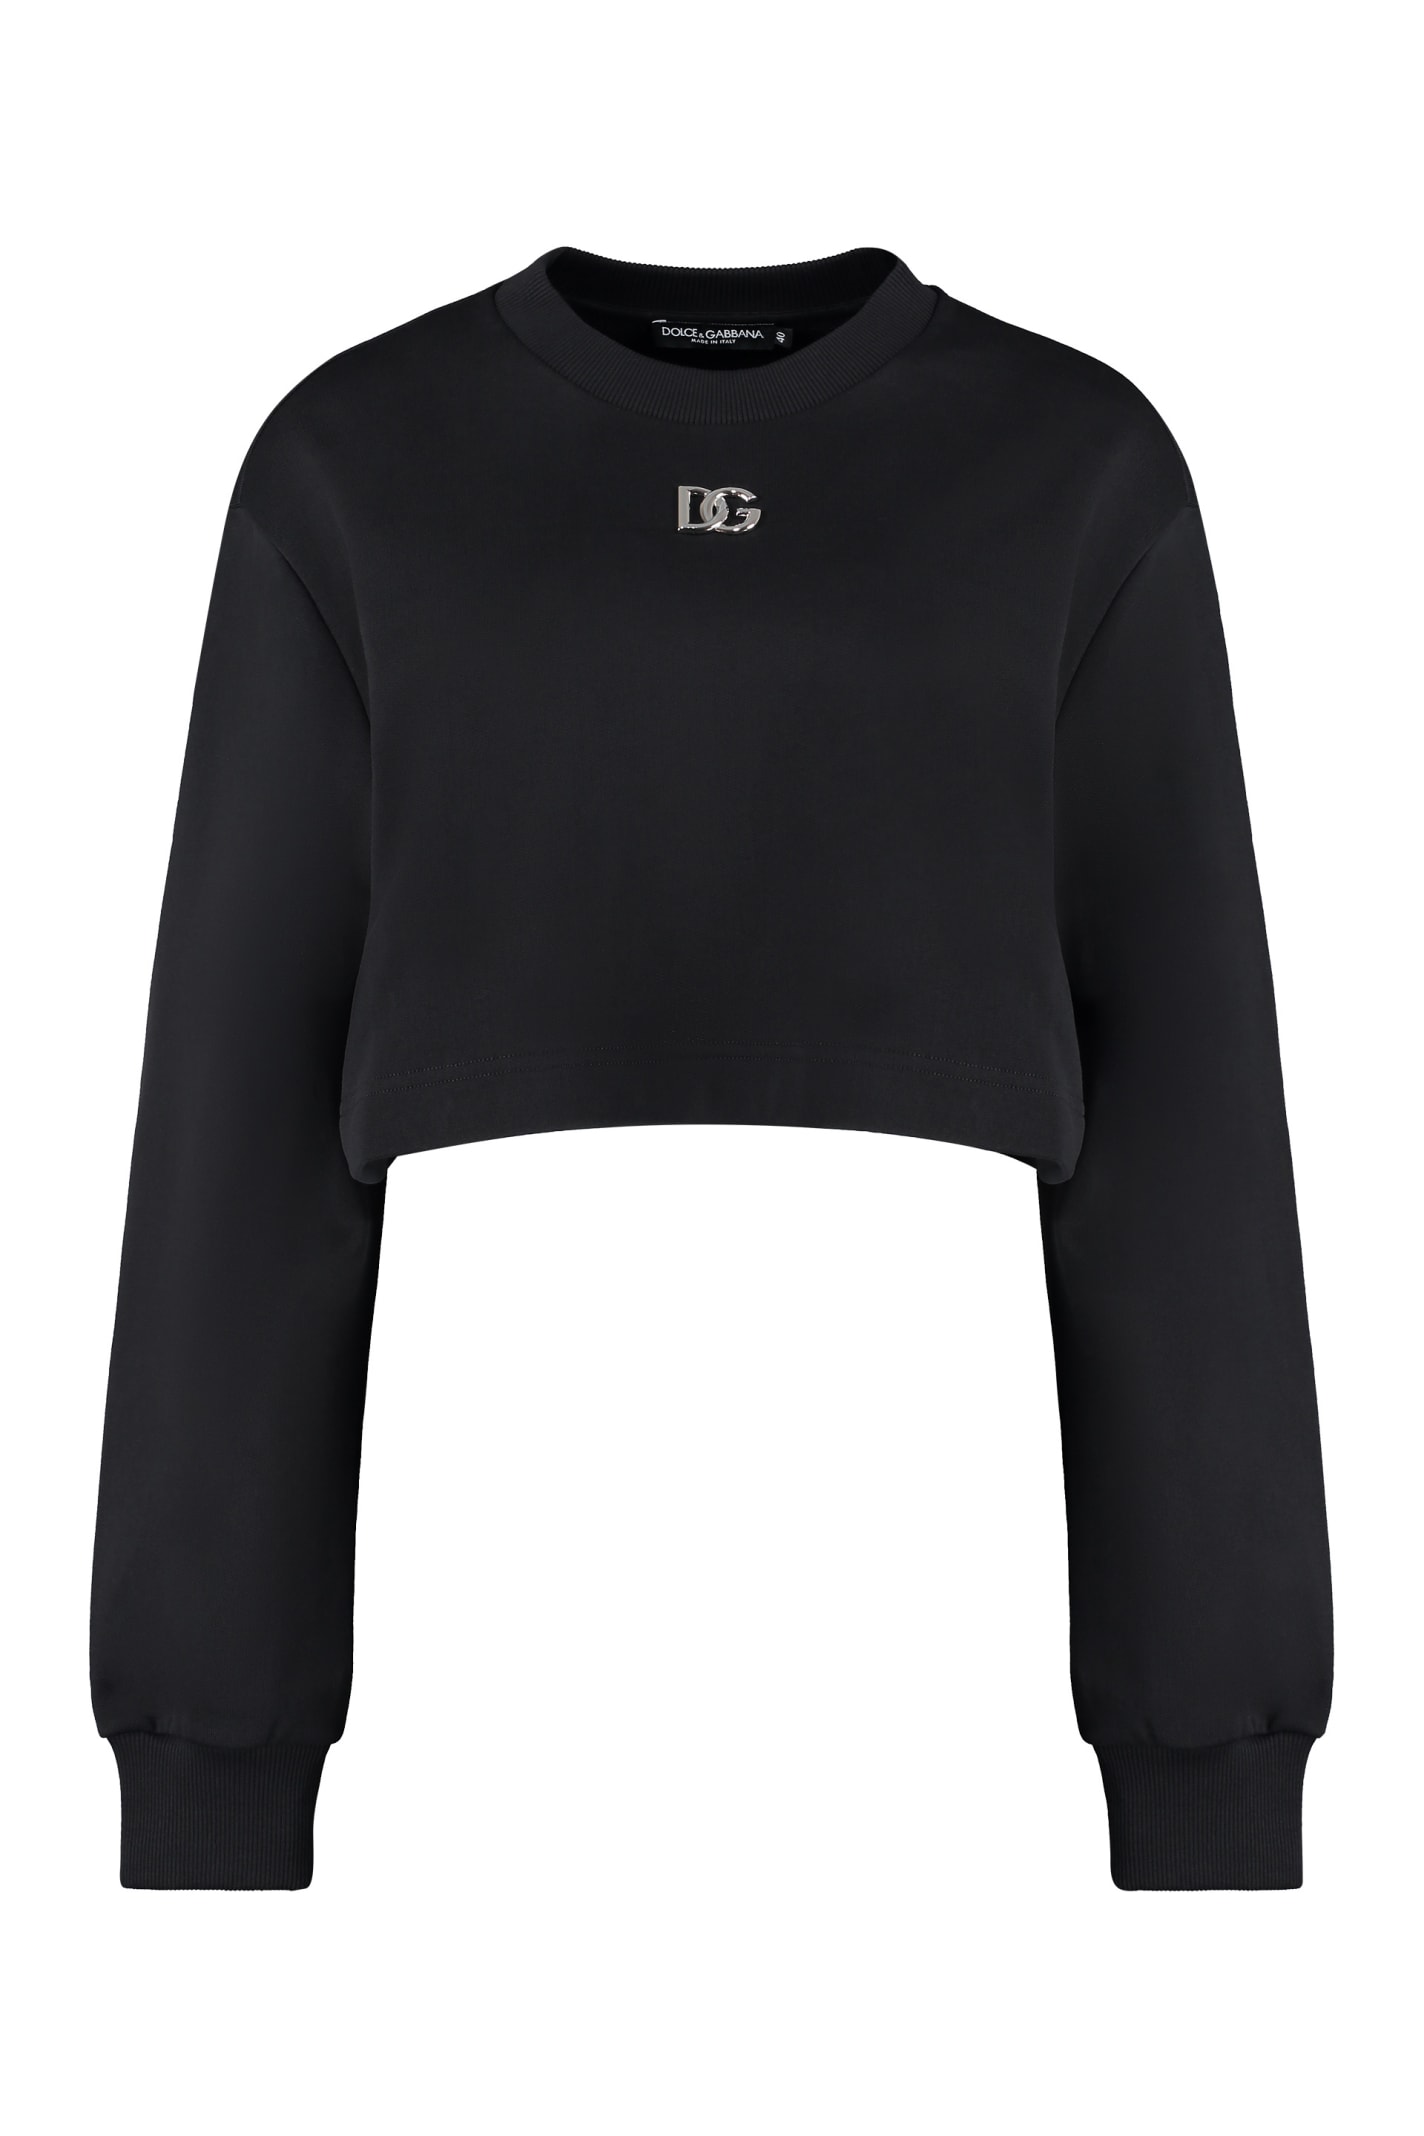 Dolce & Gabbana Cotton Crew-neck Sweatshirt With Logo